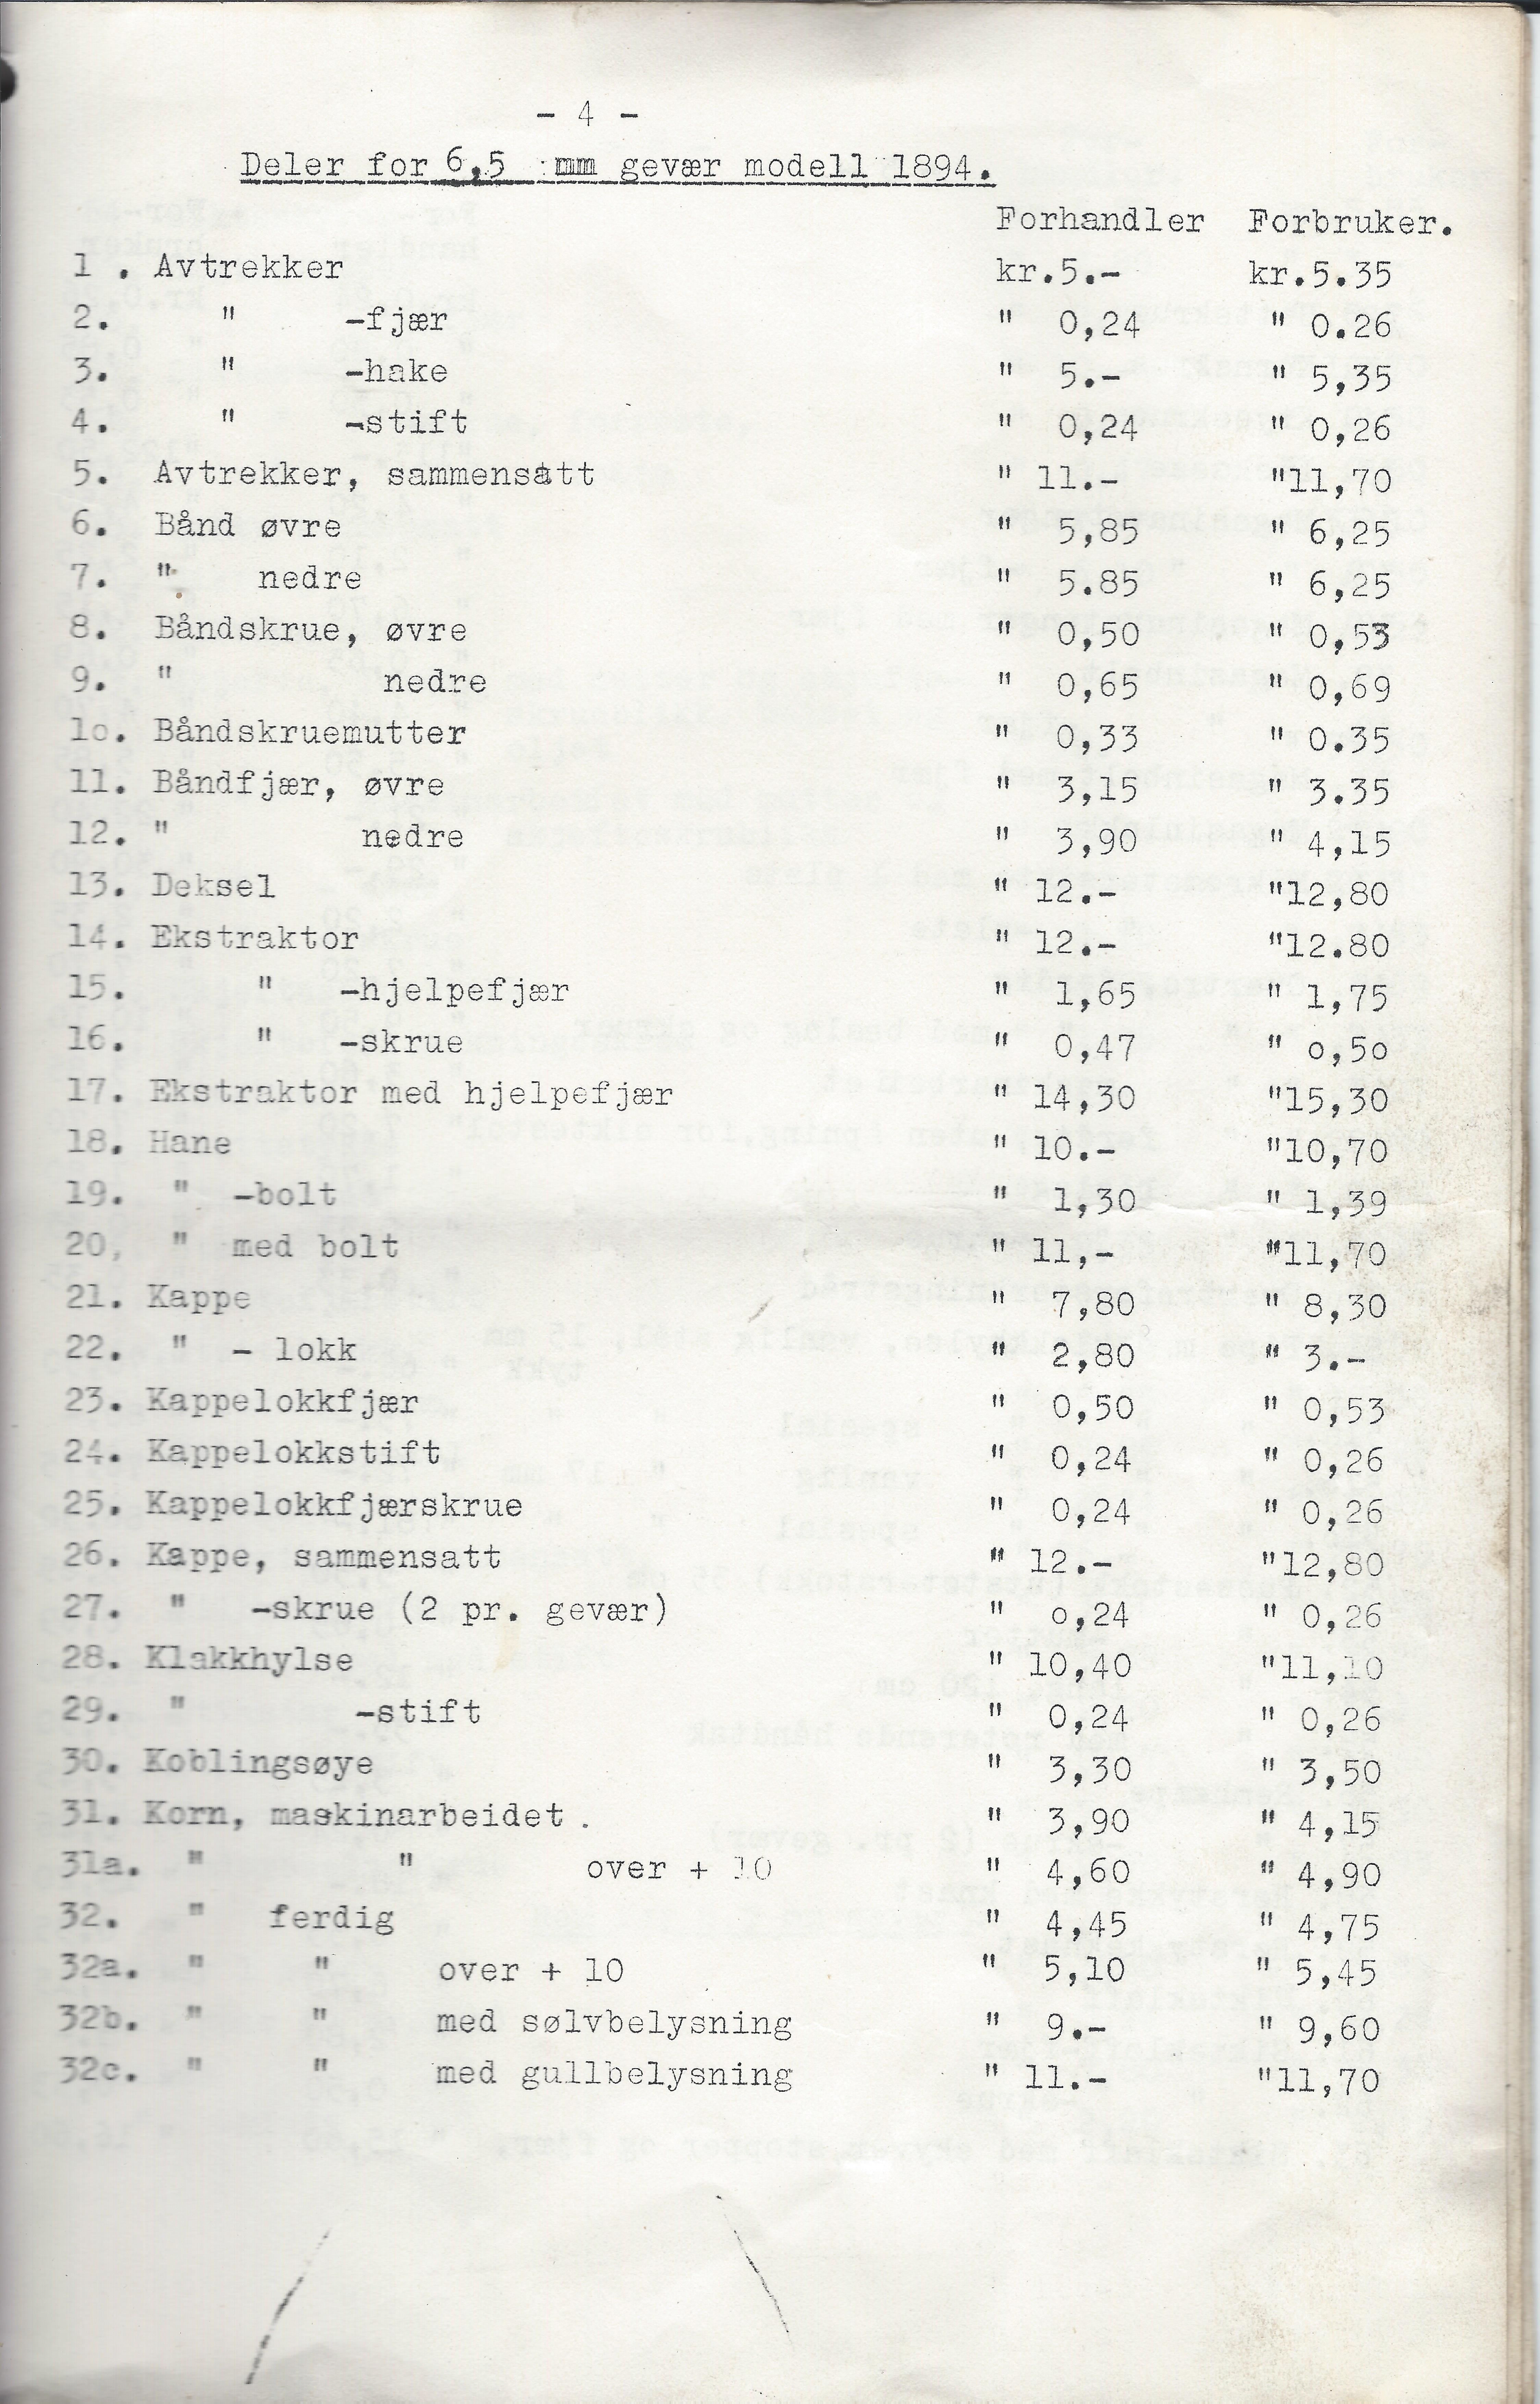 ./doc/KV/KV-Prisliste-Deler-Nr15-September-1948-5.jpg